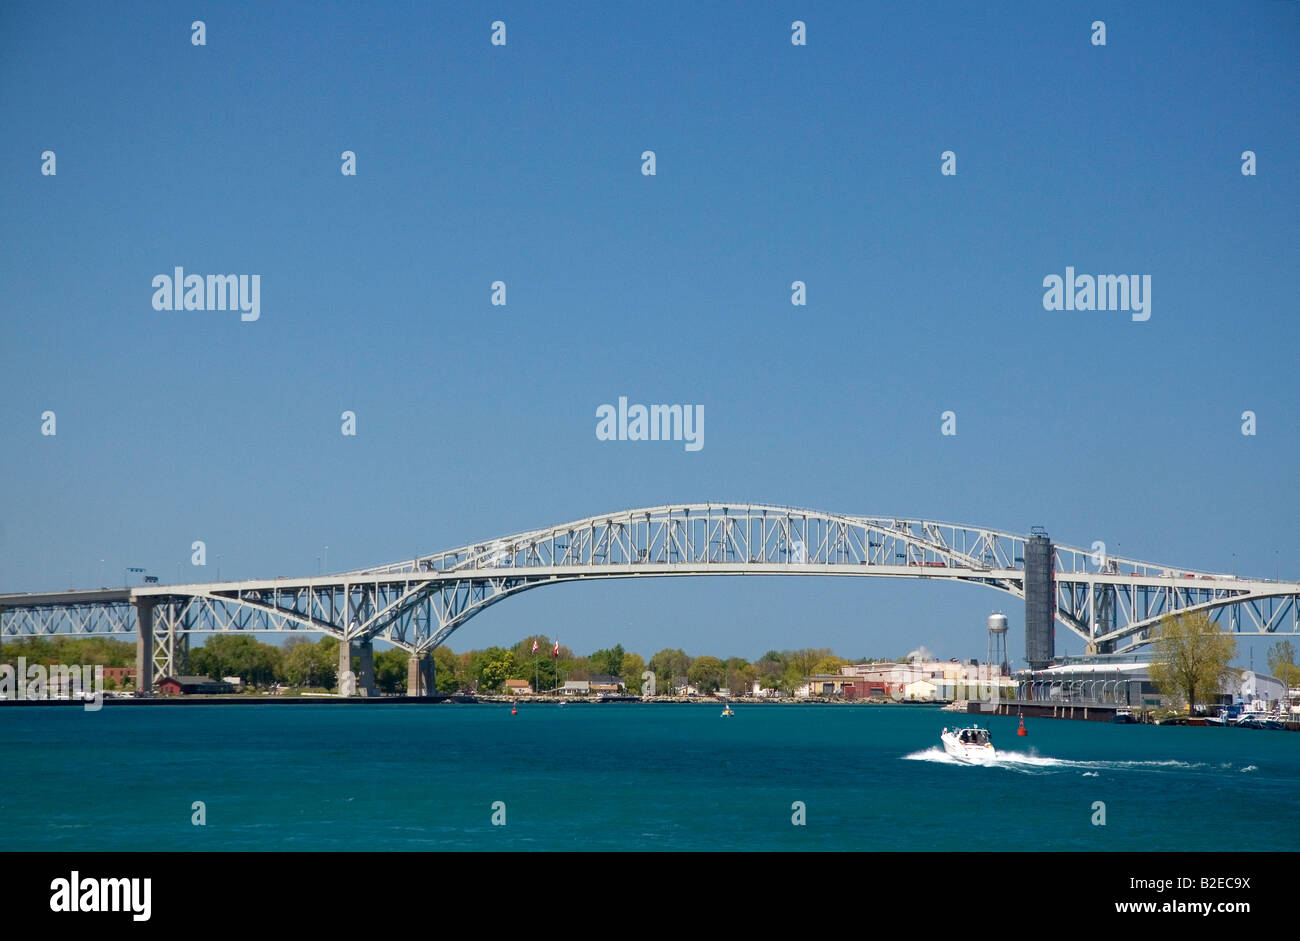 Le pont Blue Water est un pont à travée double qui s'étend sur la rivière St Clair entre Port Huron au Michigan et de Point Edward (Ontario) Banque D'Images